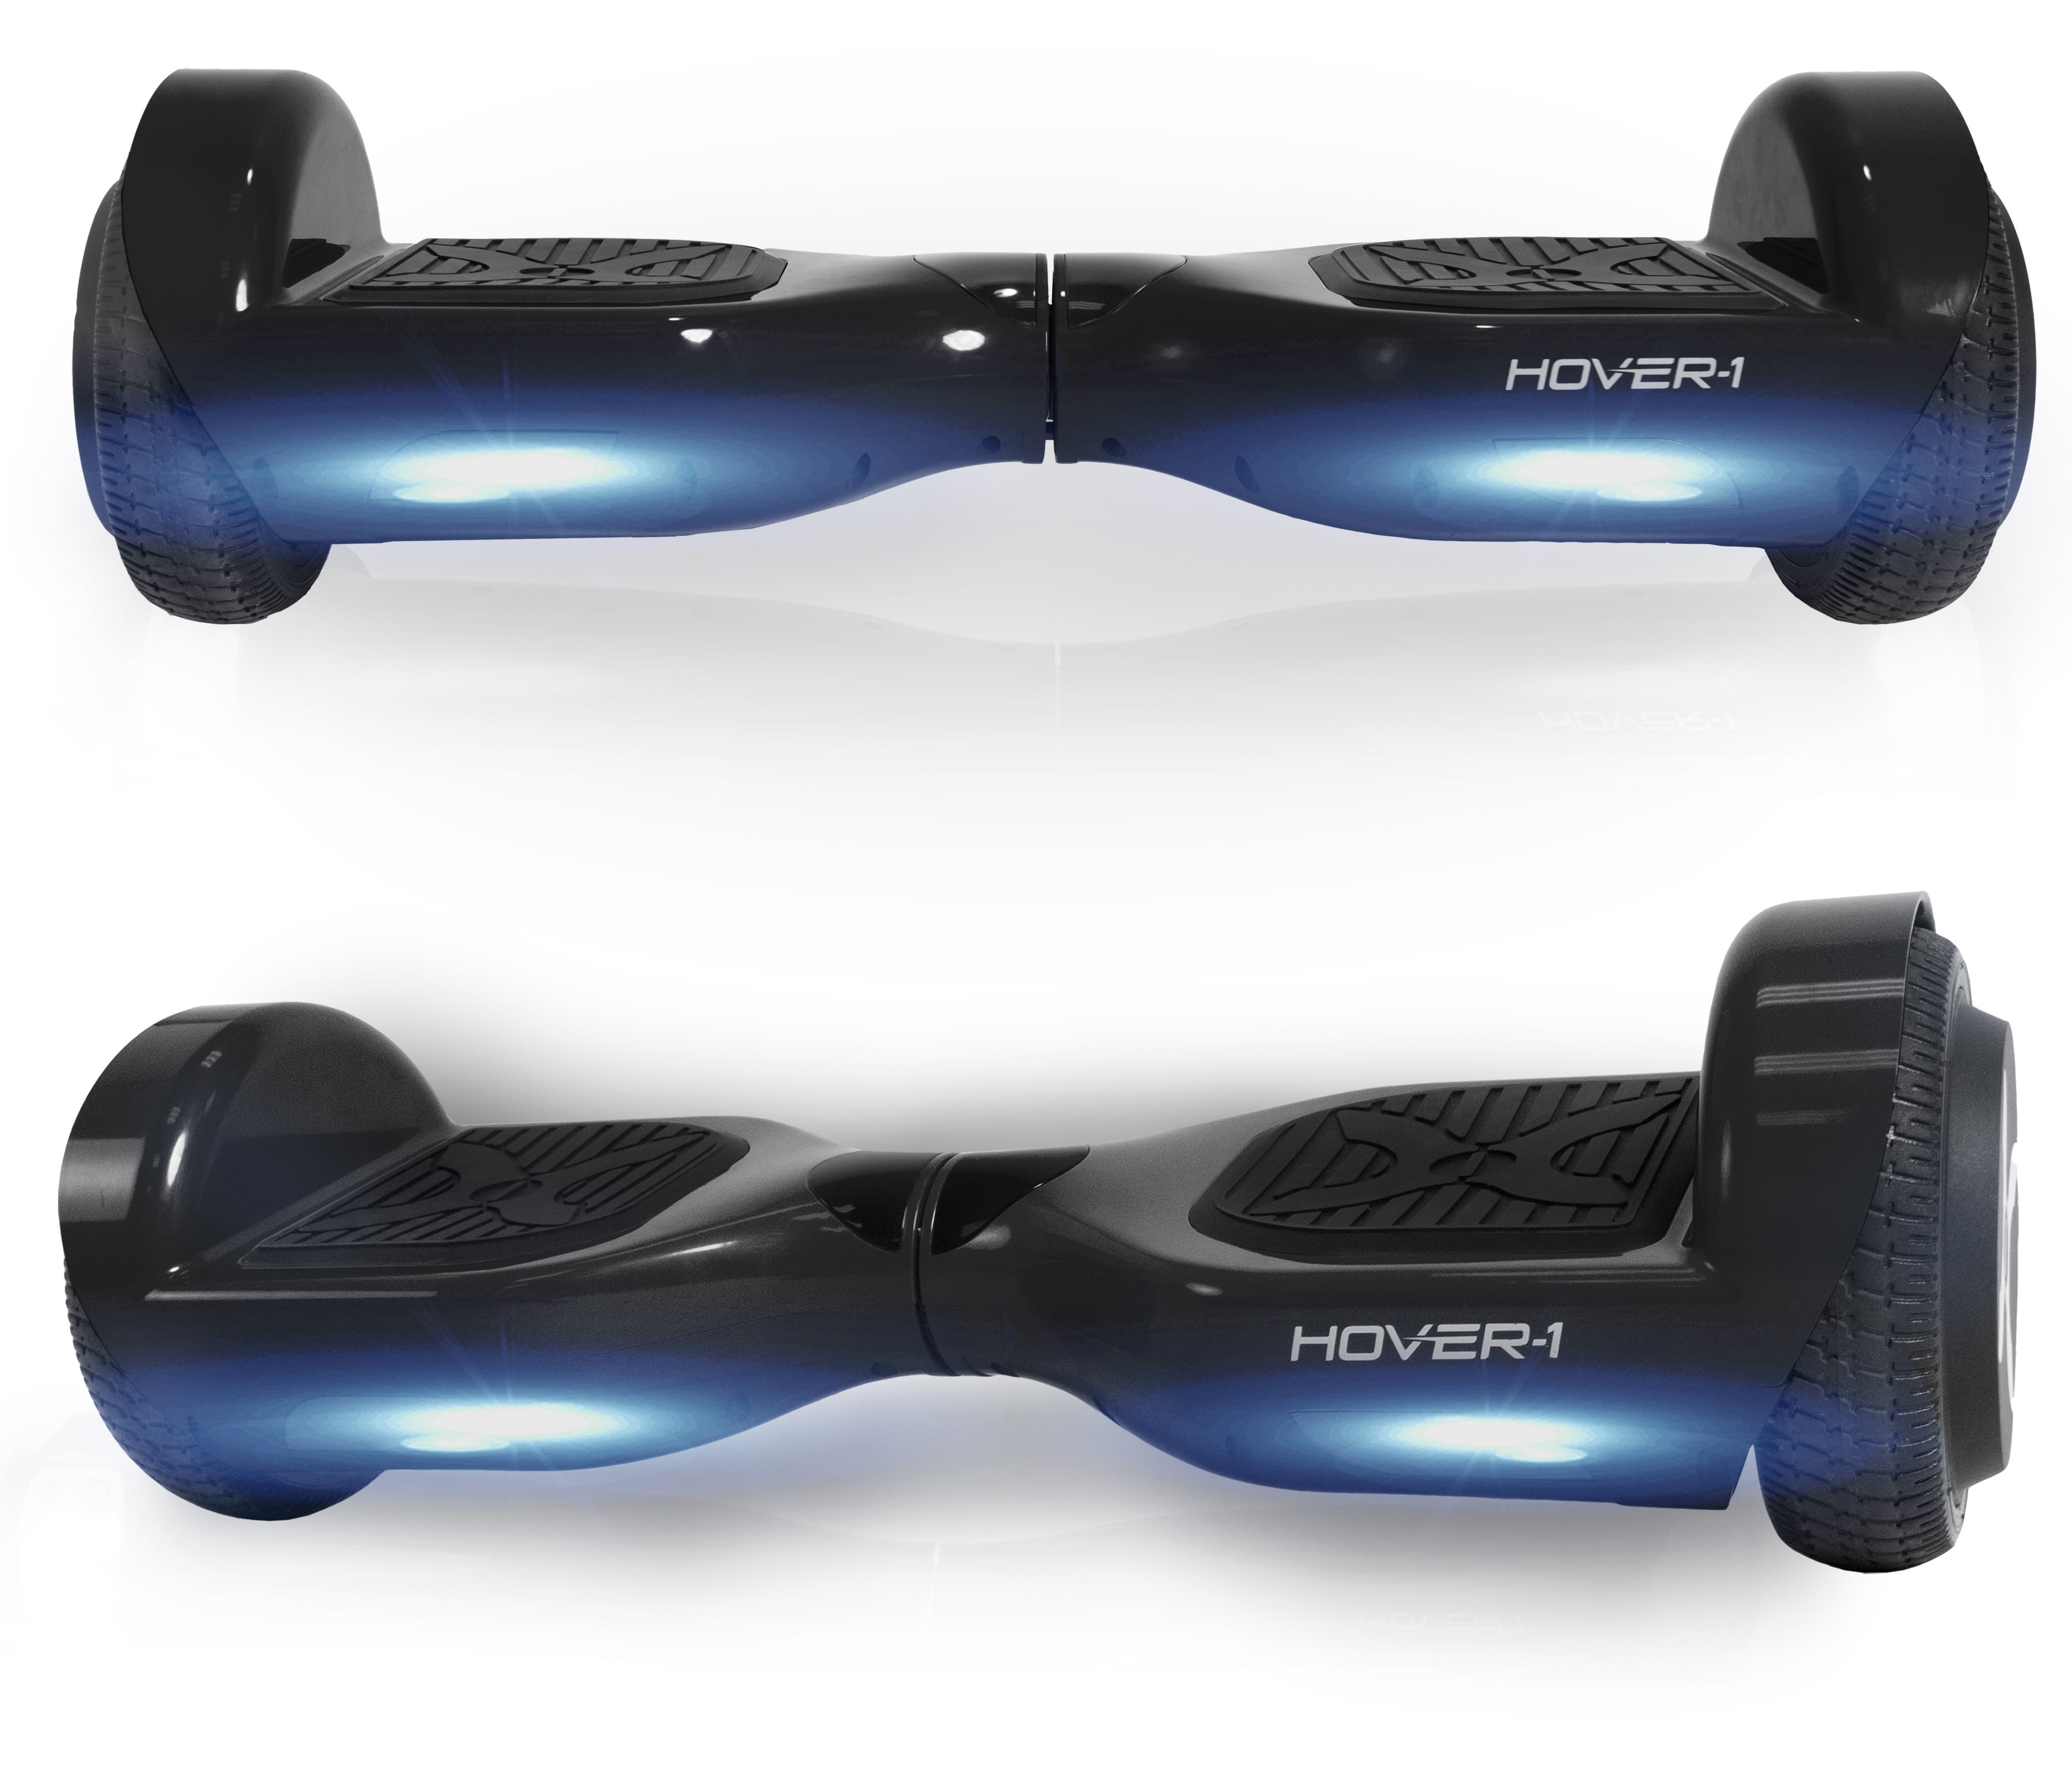 ¿Es Hover-1 un buen hoverboard?